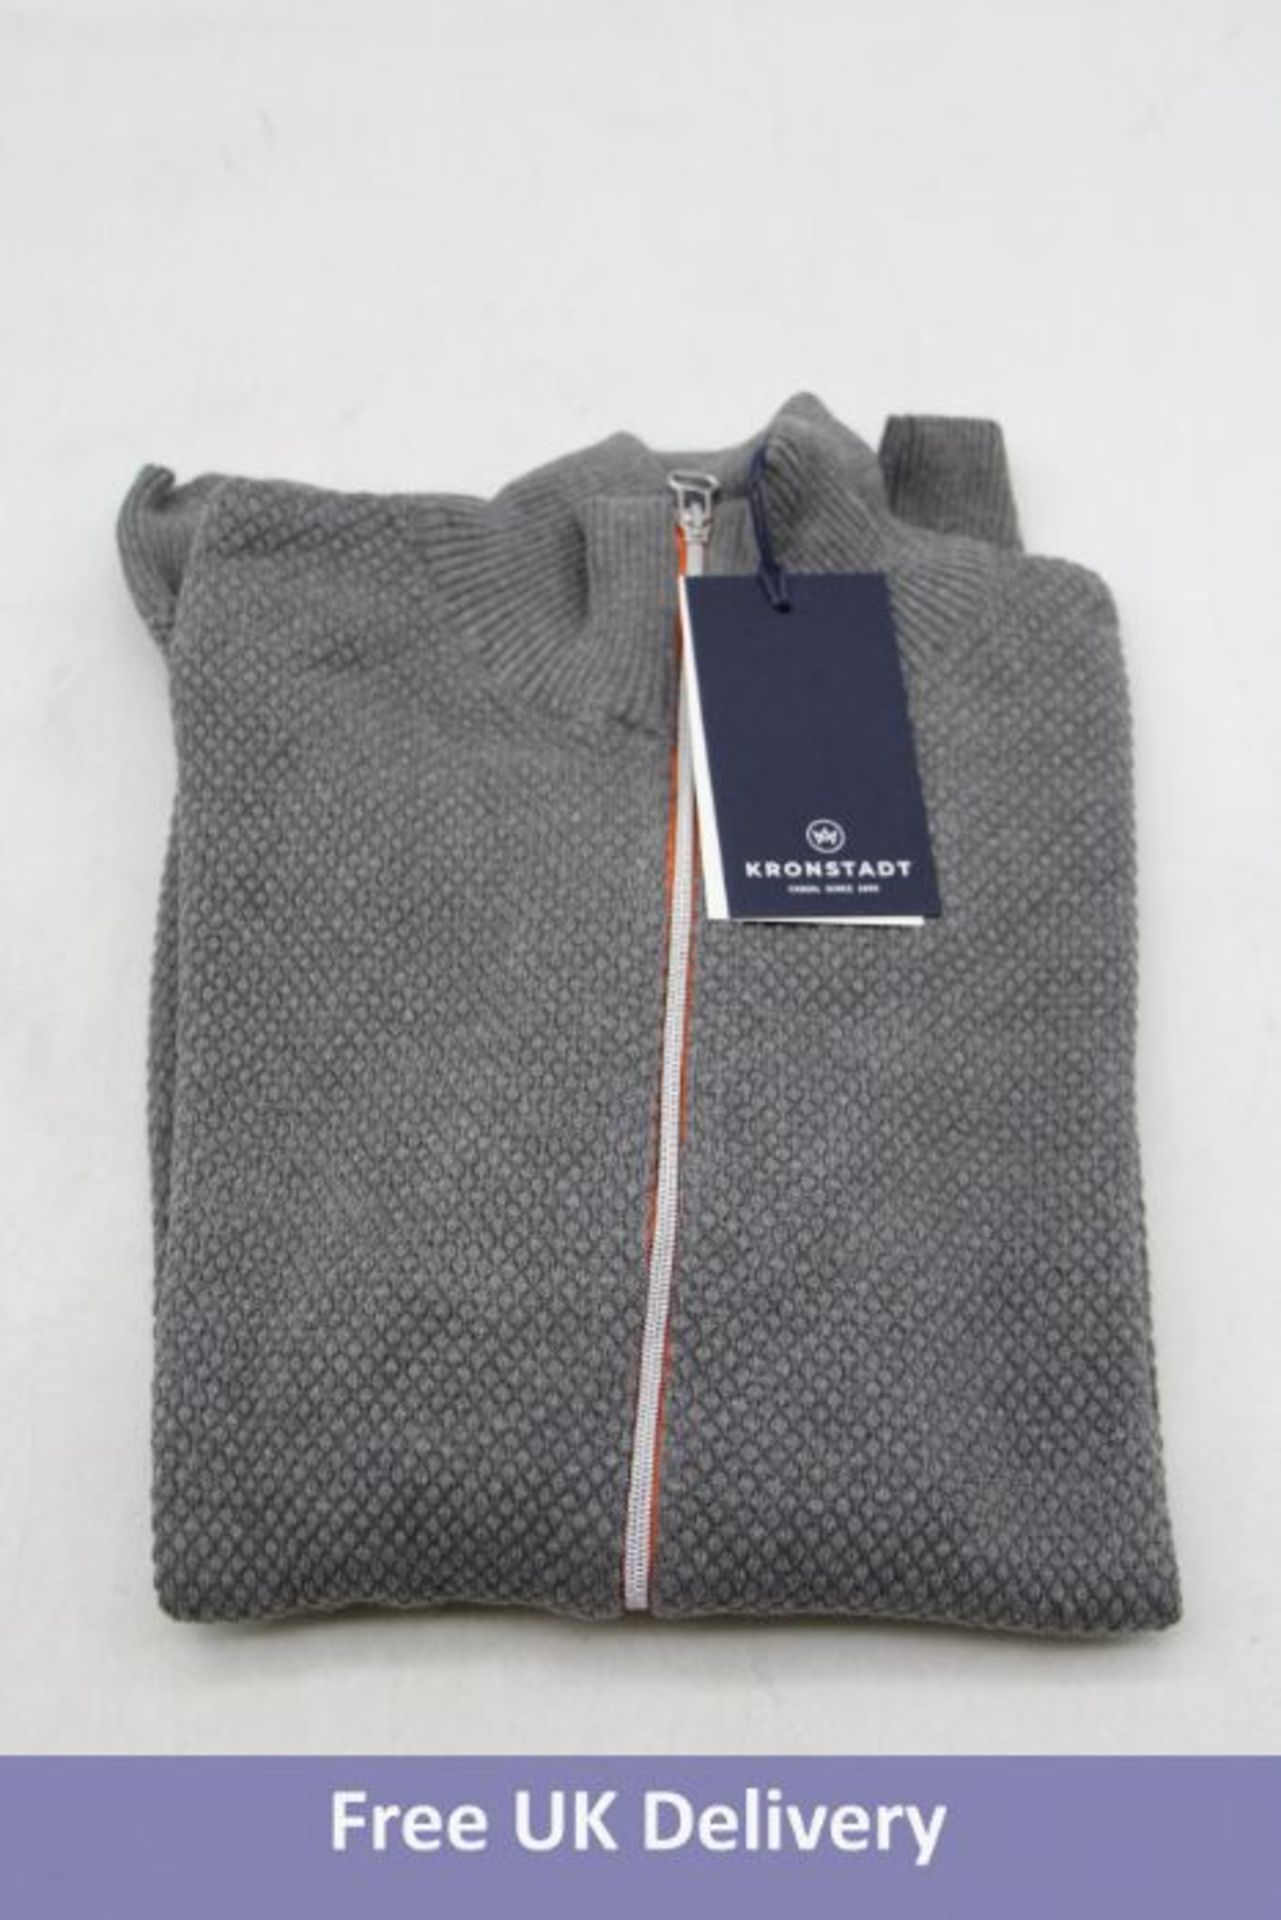 Four Kronstadt Erlk Zip Cardigan/Sweater, Grey/Orange Zip, Size L - Image 2 of 4